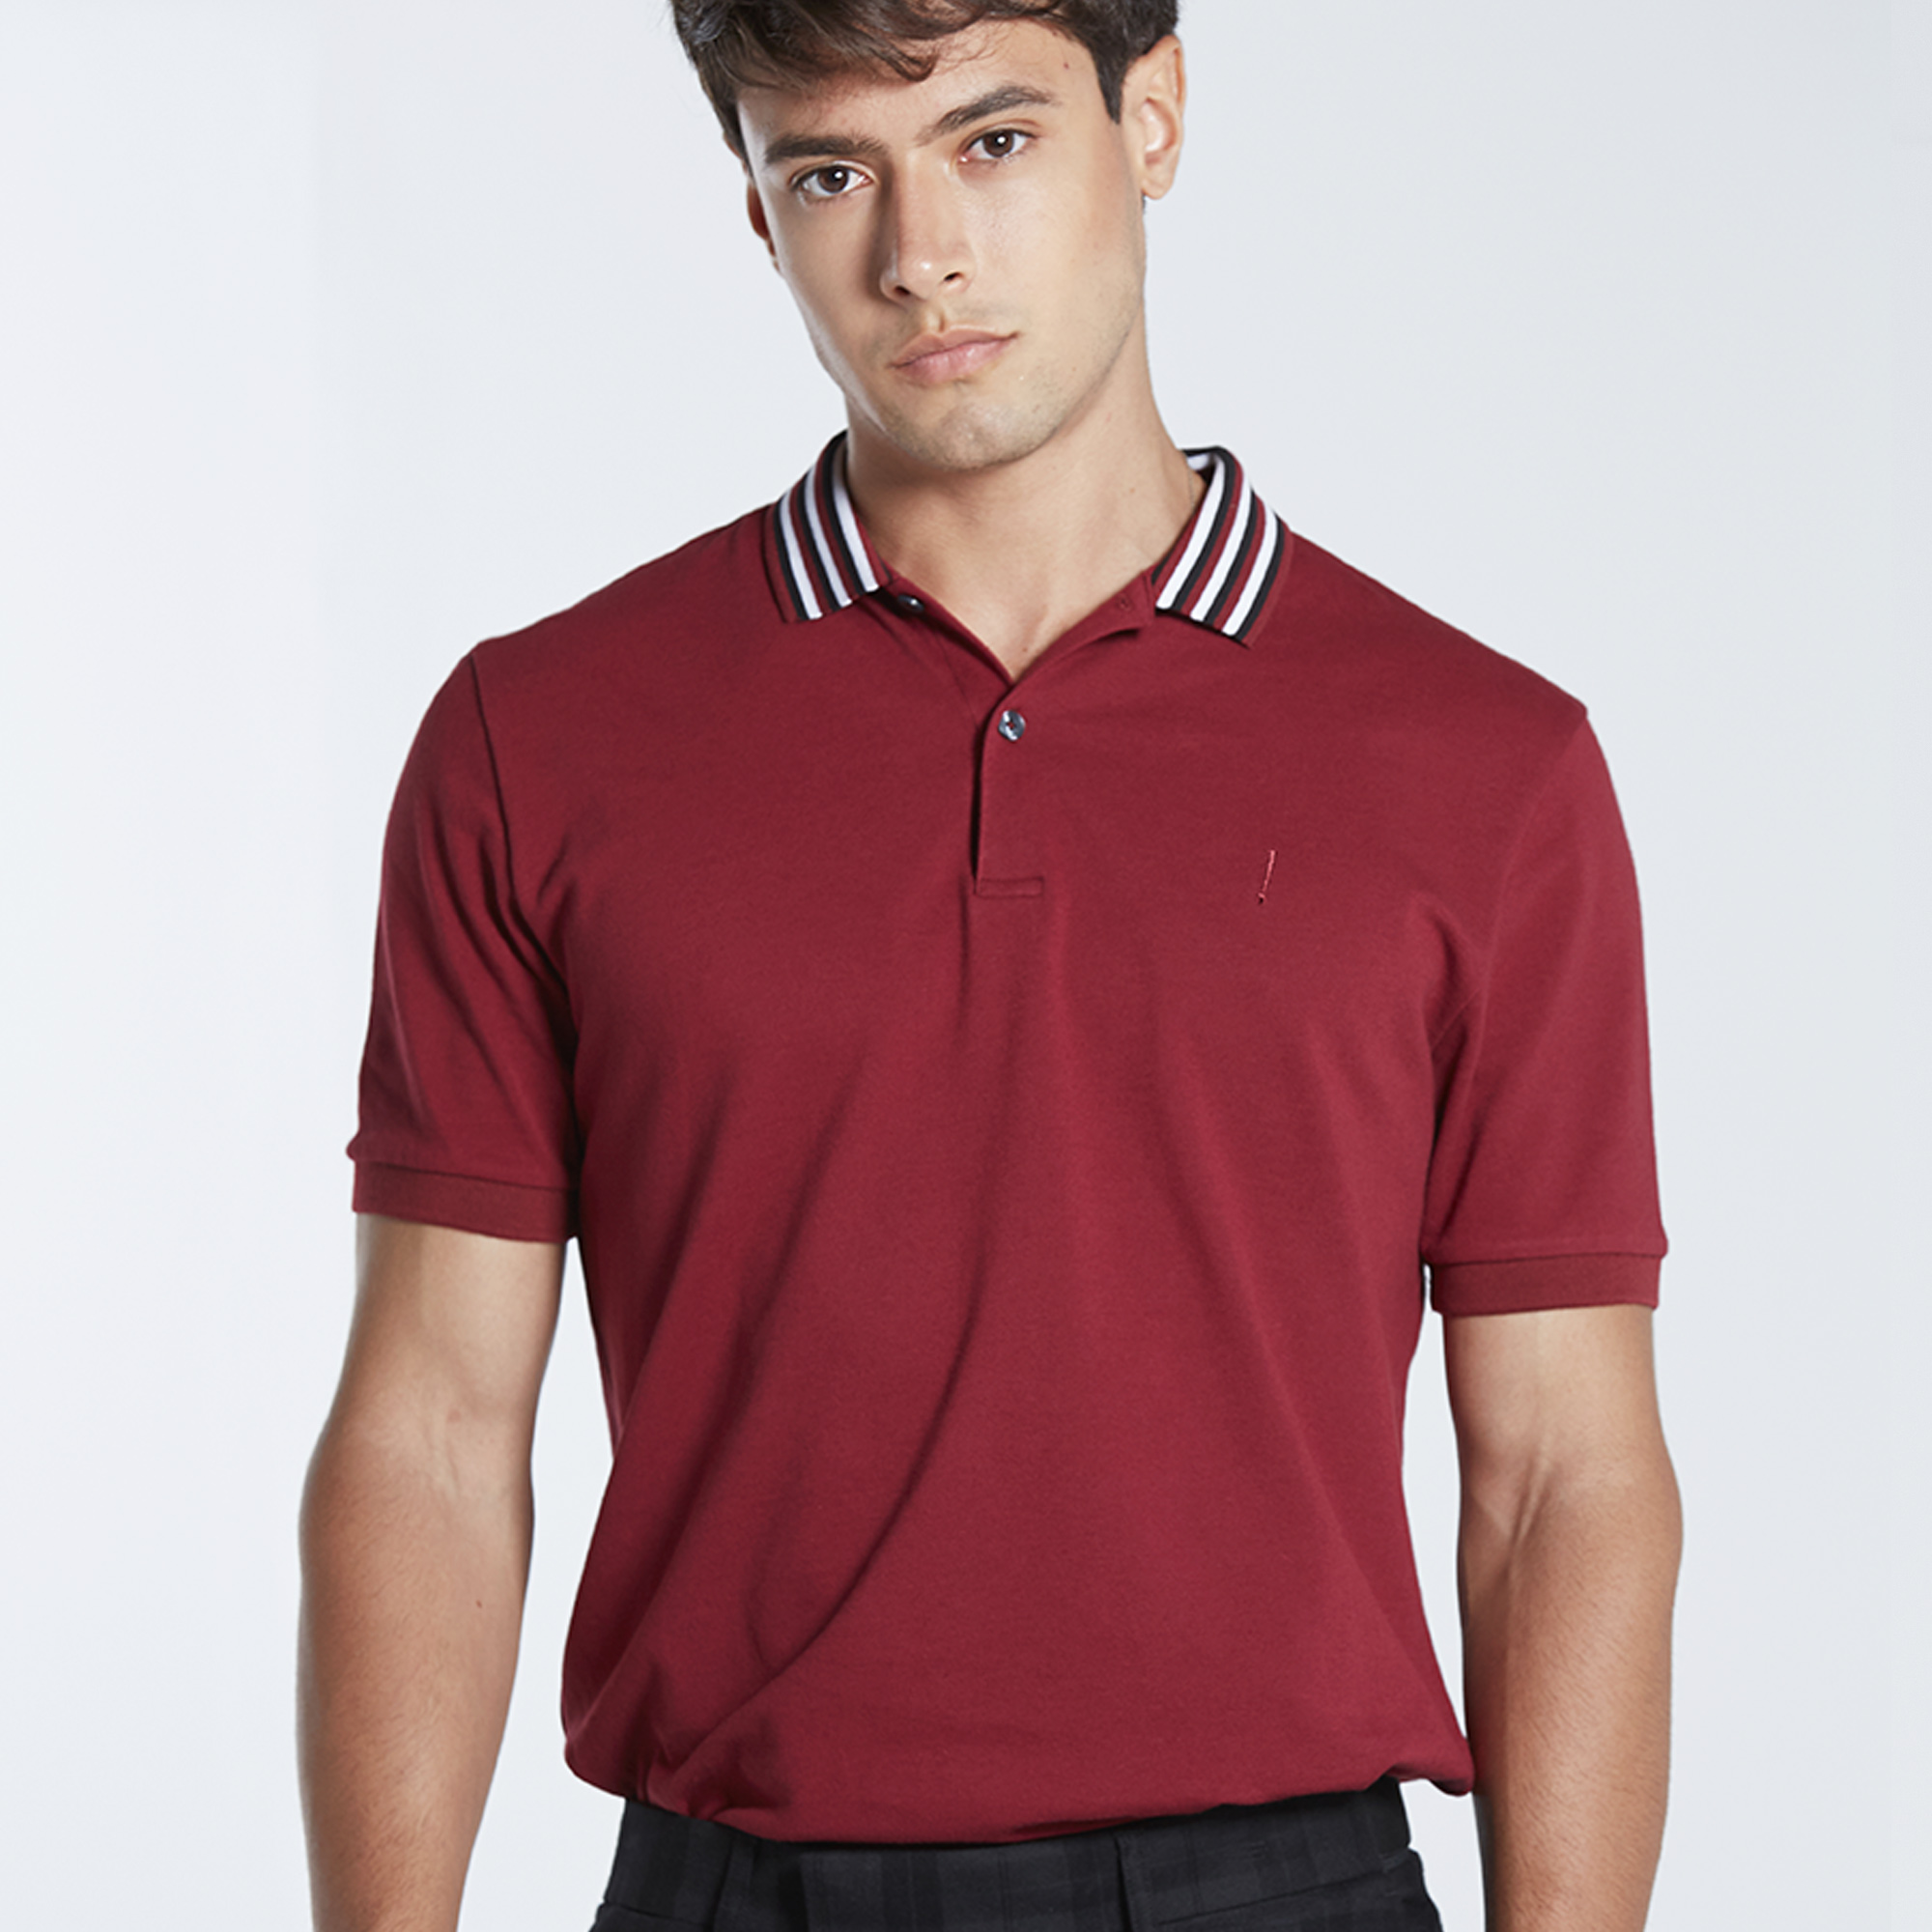 Morgan Homme เสื้อโปโล Polo แขนสั้น ทรงเข้ารูป ผ้า Cotton + Lycra สวมใส่สบาย สีกรม และ สีแดง รุ่น Darken